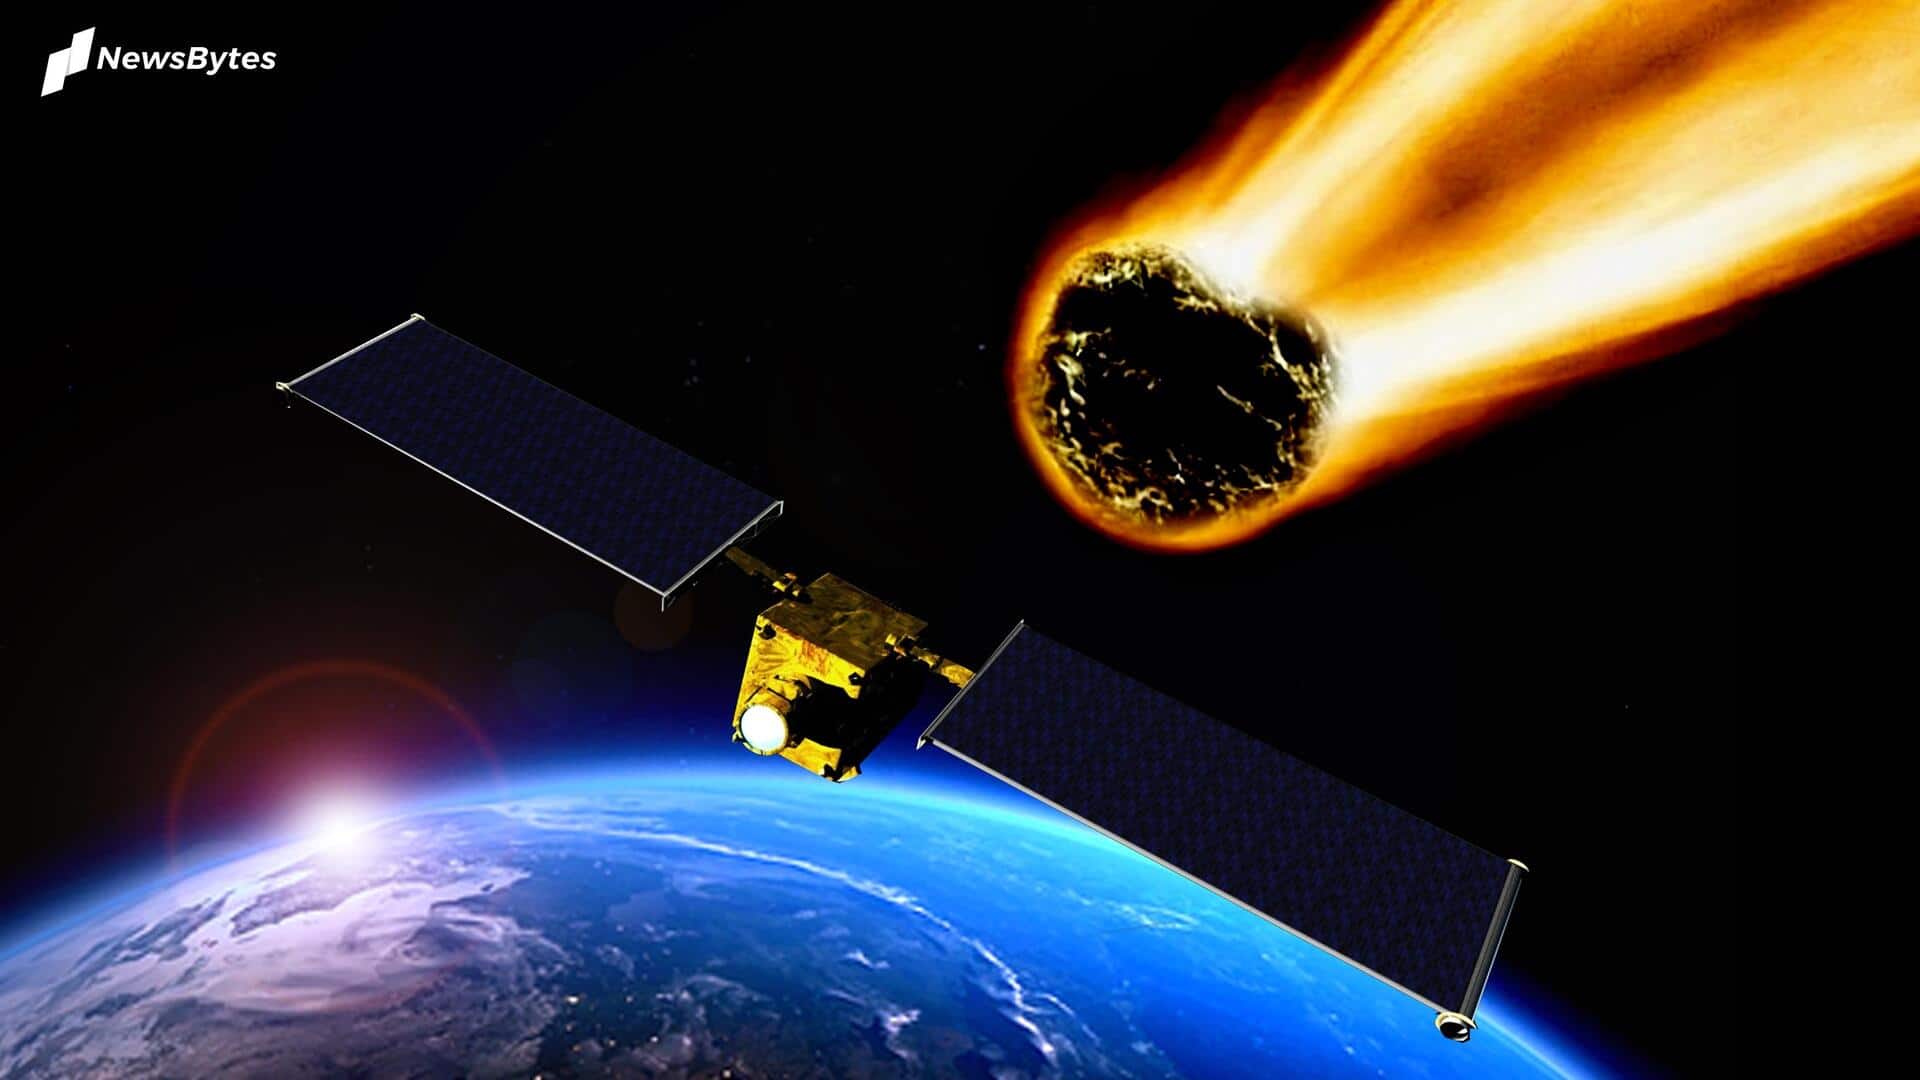 पृथ्वी की तरफ बढ़ रहा 58 फीट चौड़ा एस्ट्रोयड, नासा ने जारी किया अलर्ट